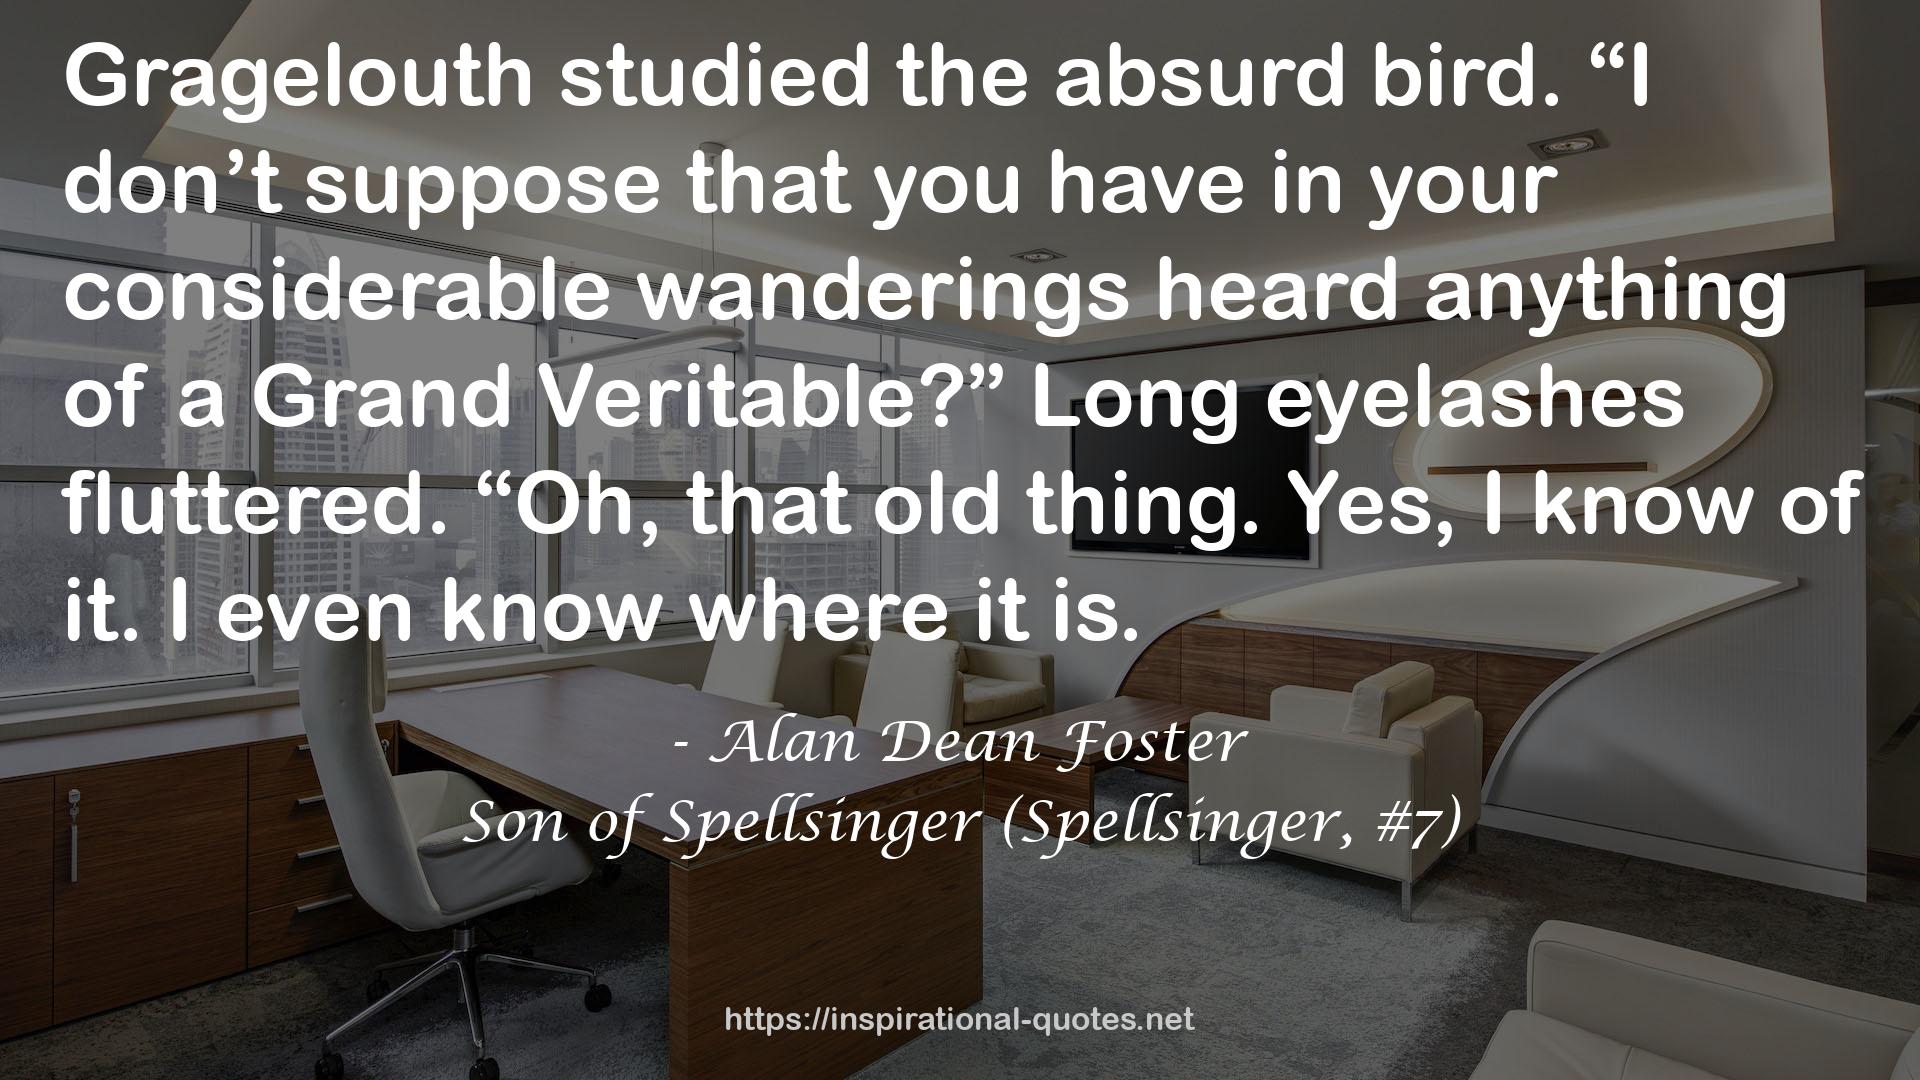 Son of Spellsinger (Spellsinger, #7) QUOTES